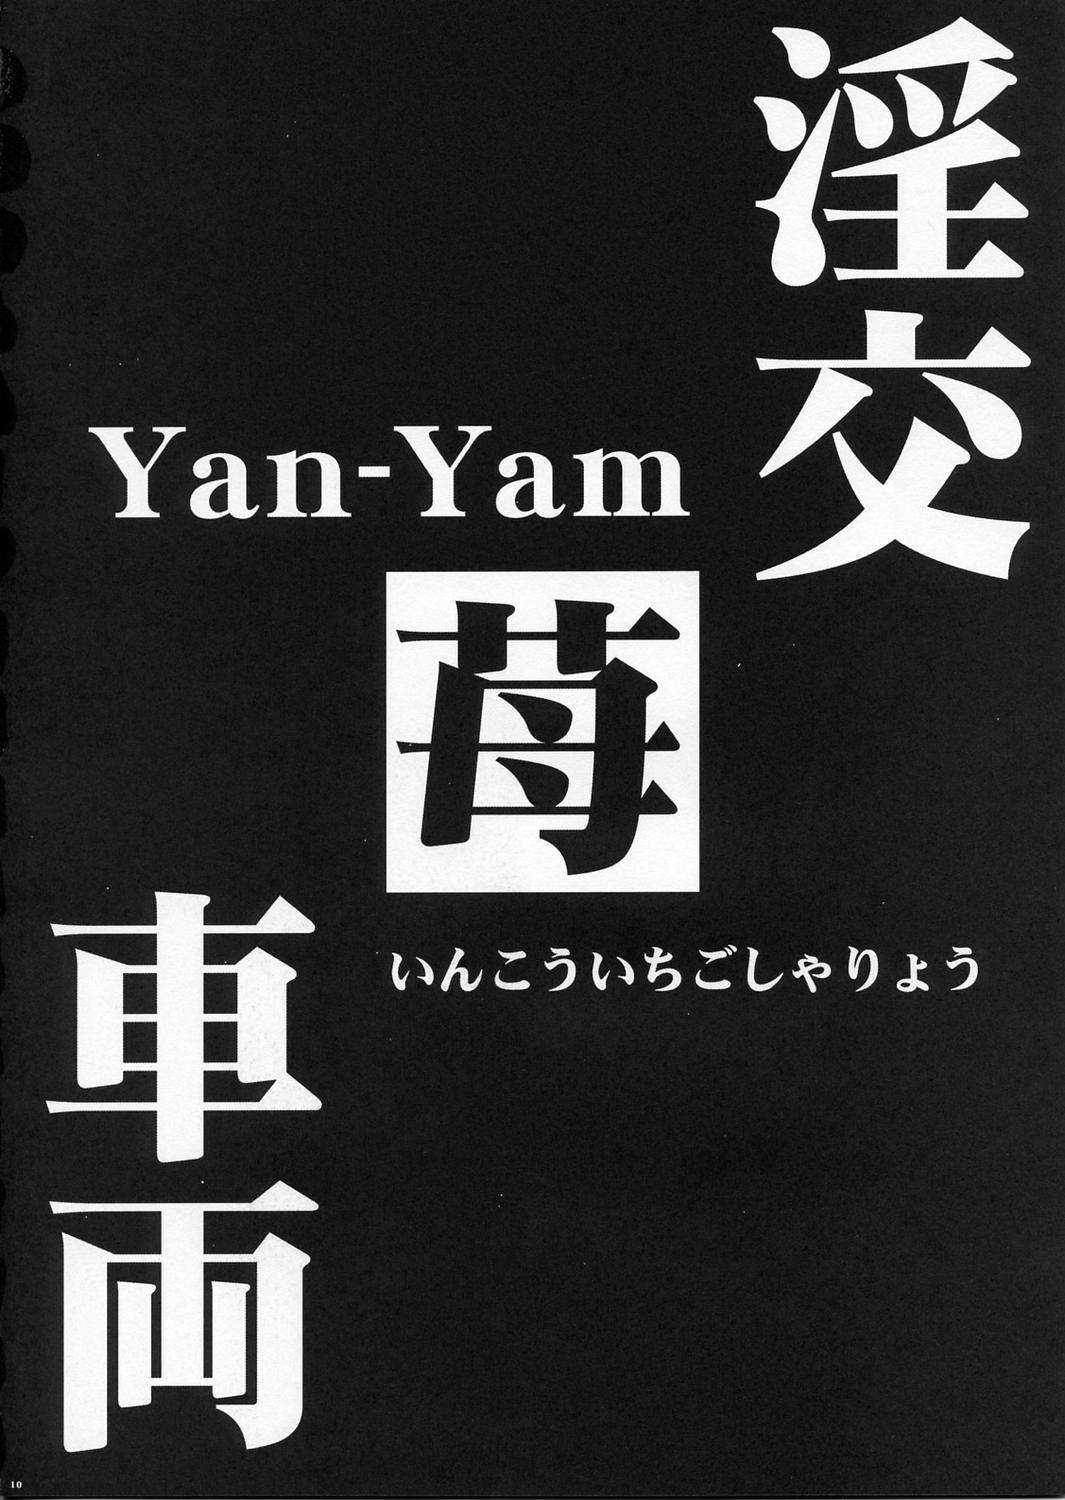 Ichigo 100% [Yan-Yam] 3 Inkou Ichigo Syaryou 